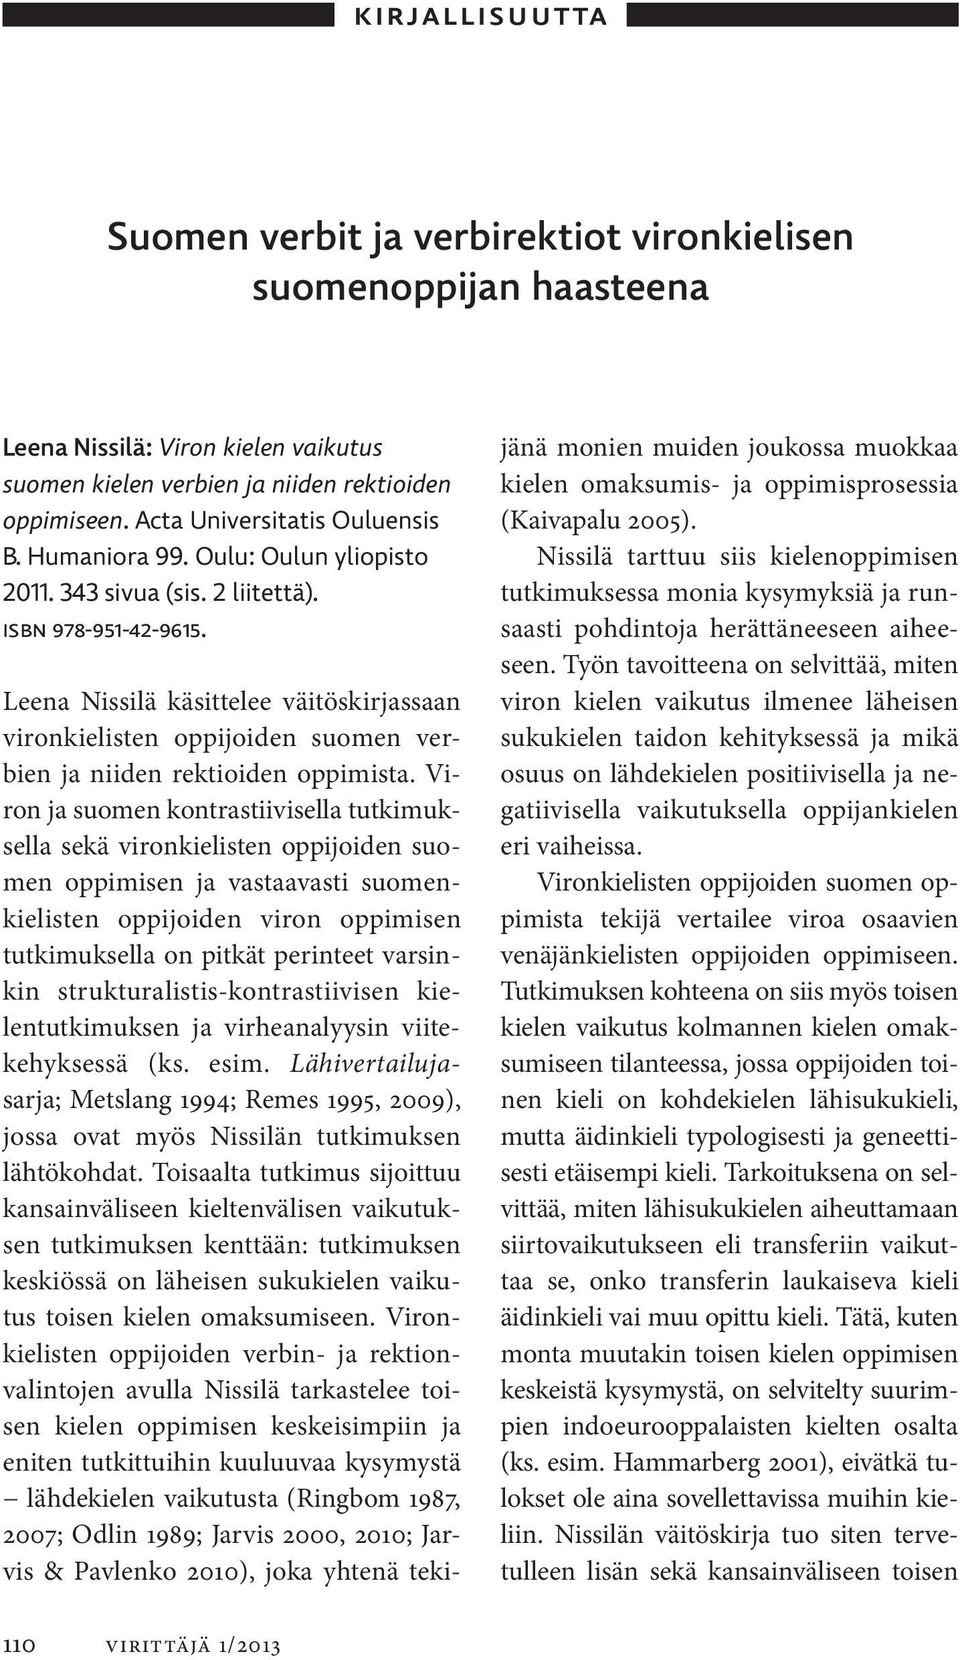 Leena Nissilä käsittelee väitöskirjassaan vironkielisten oppijoiden suomen verbien ja niiden rektioiden oppimista.